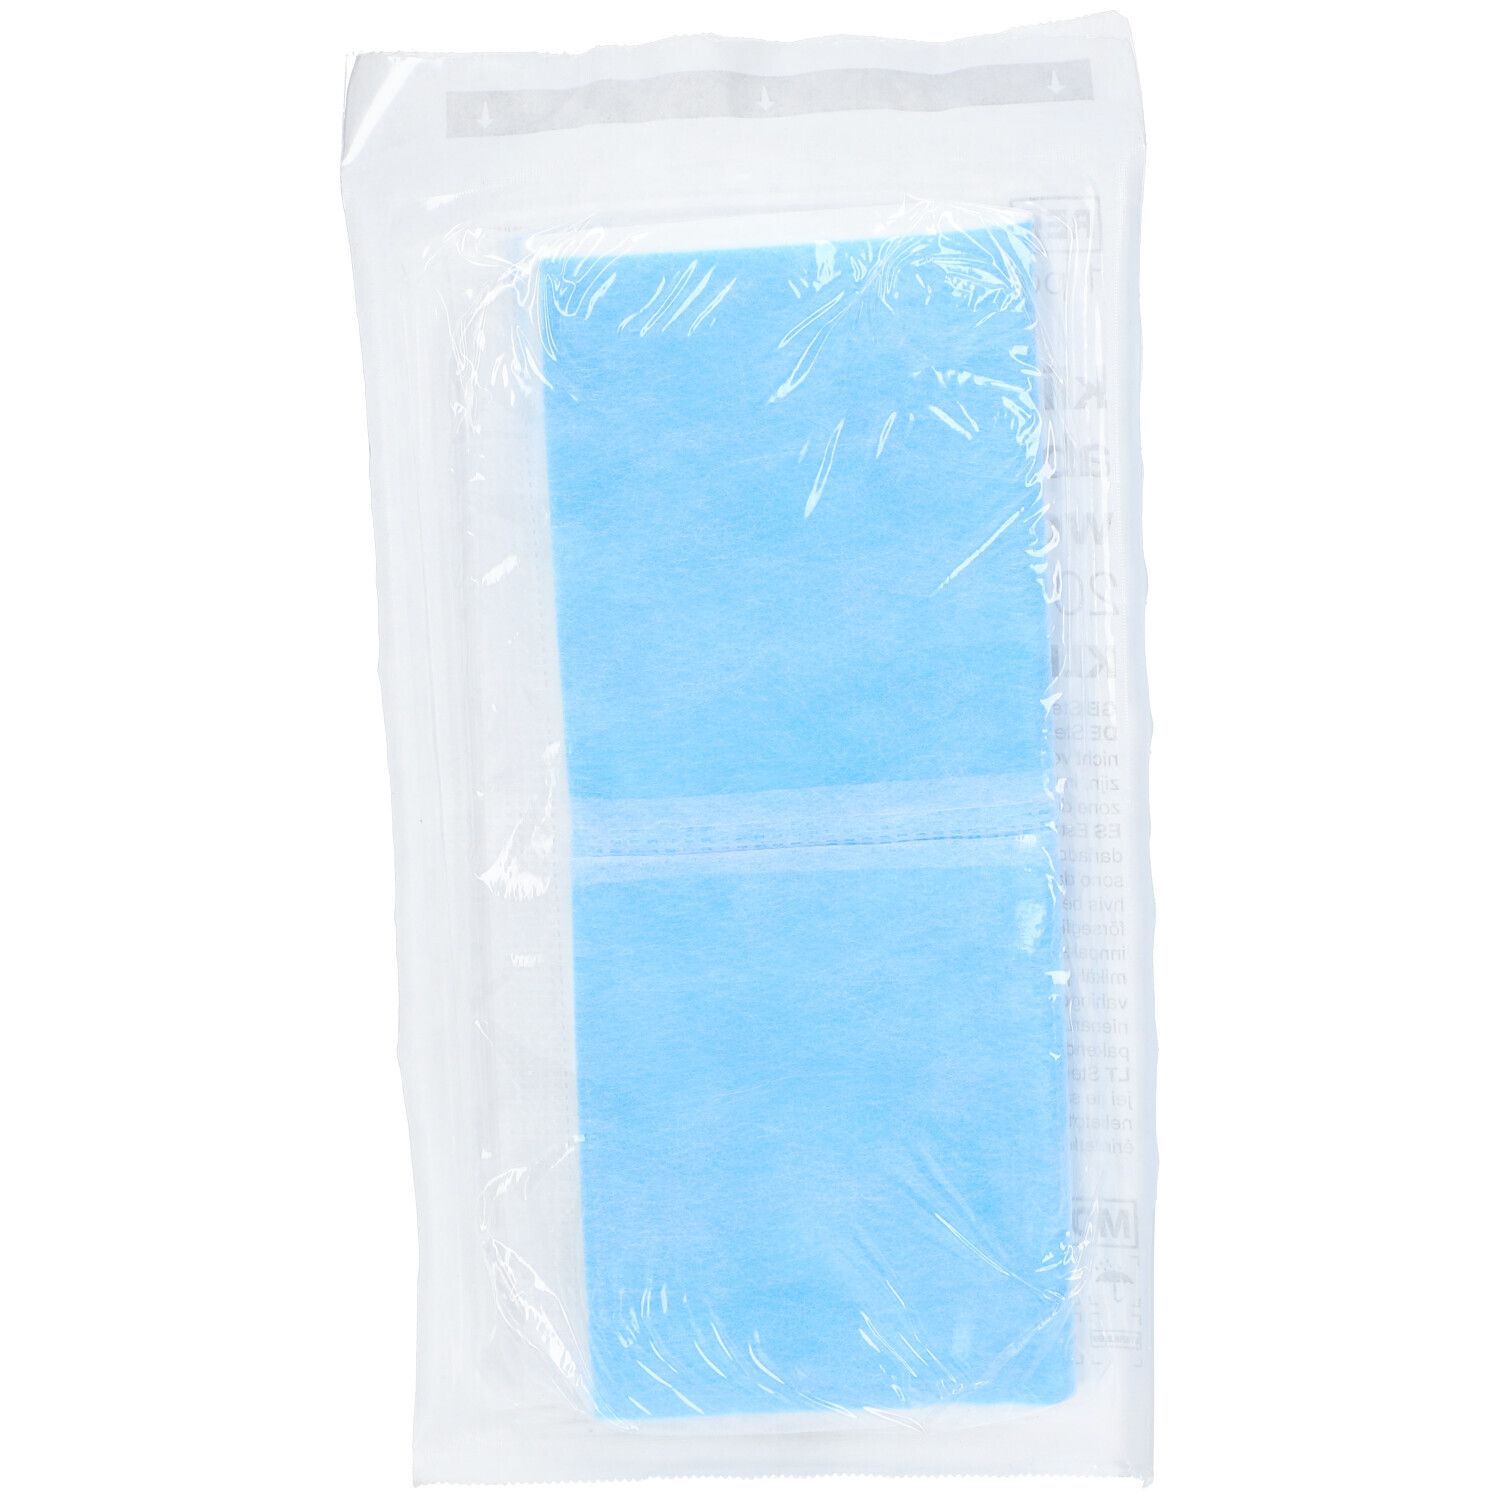 Klinion® Bandage Compressif Absorbant 20 x 20 cm